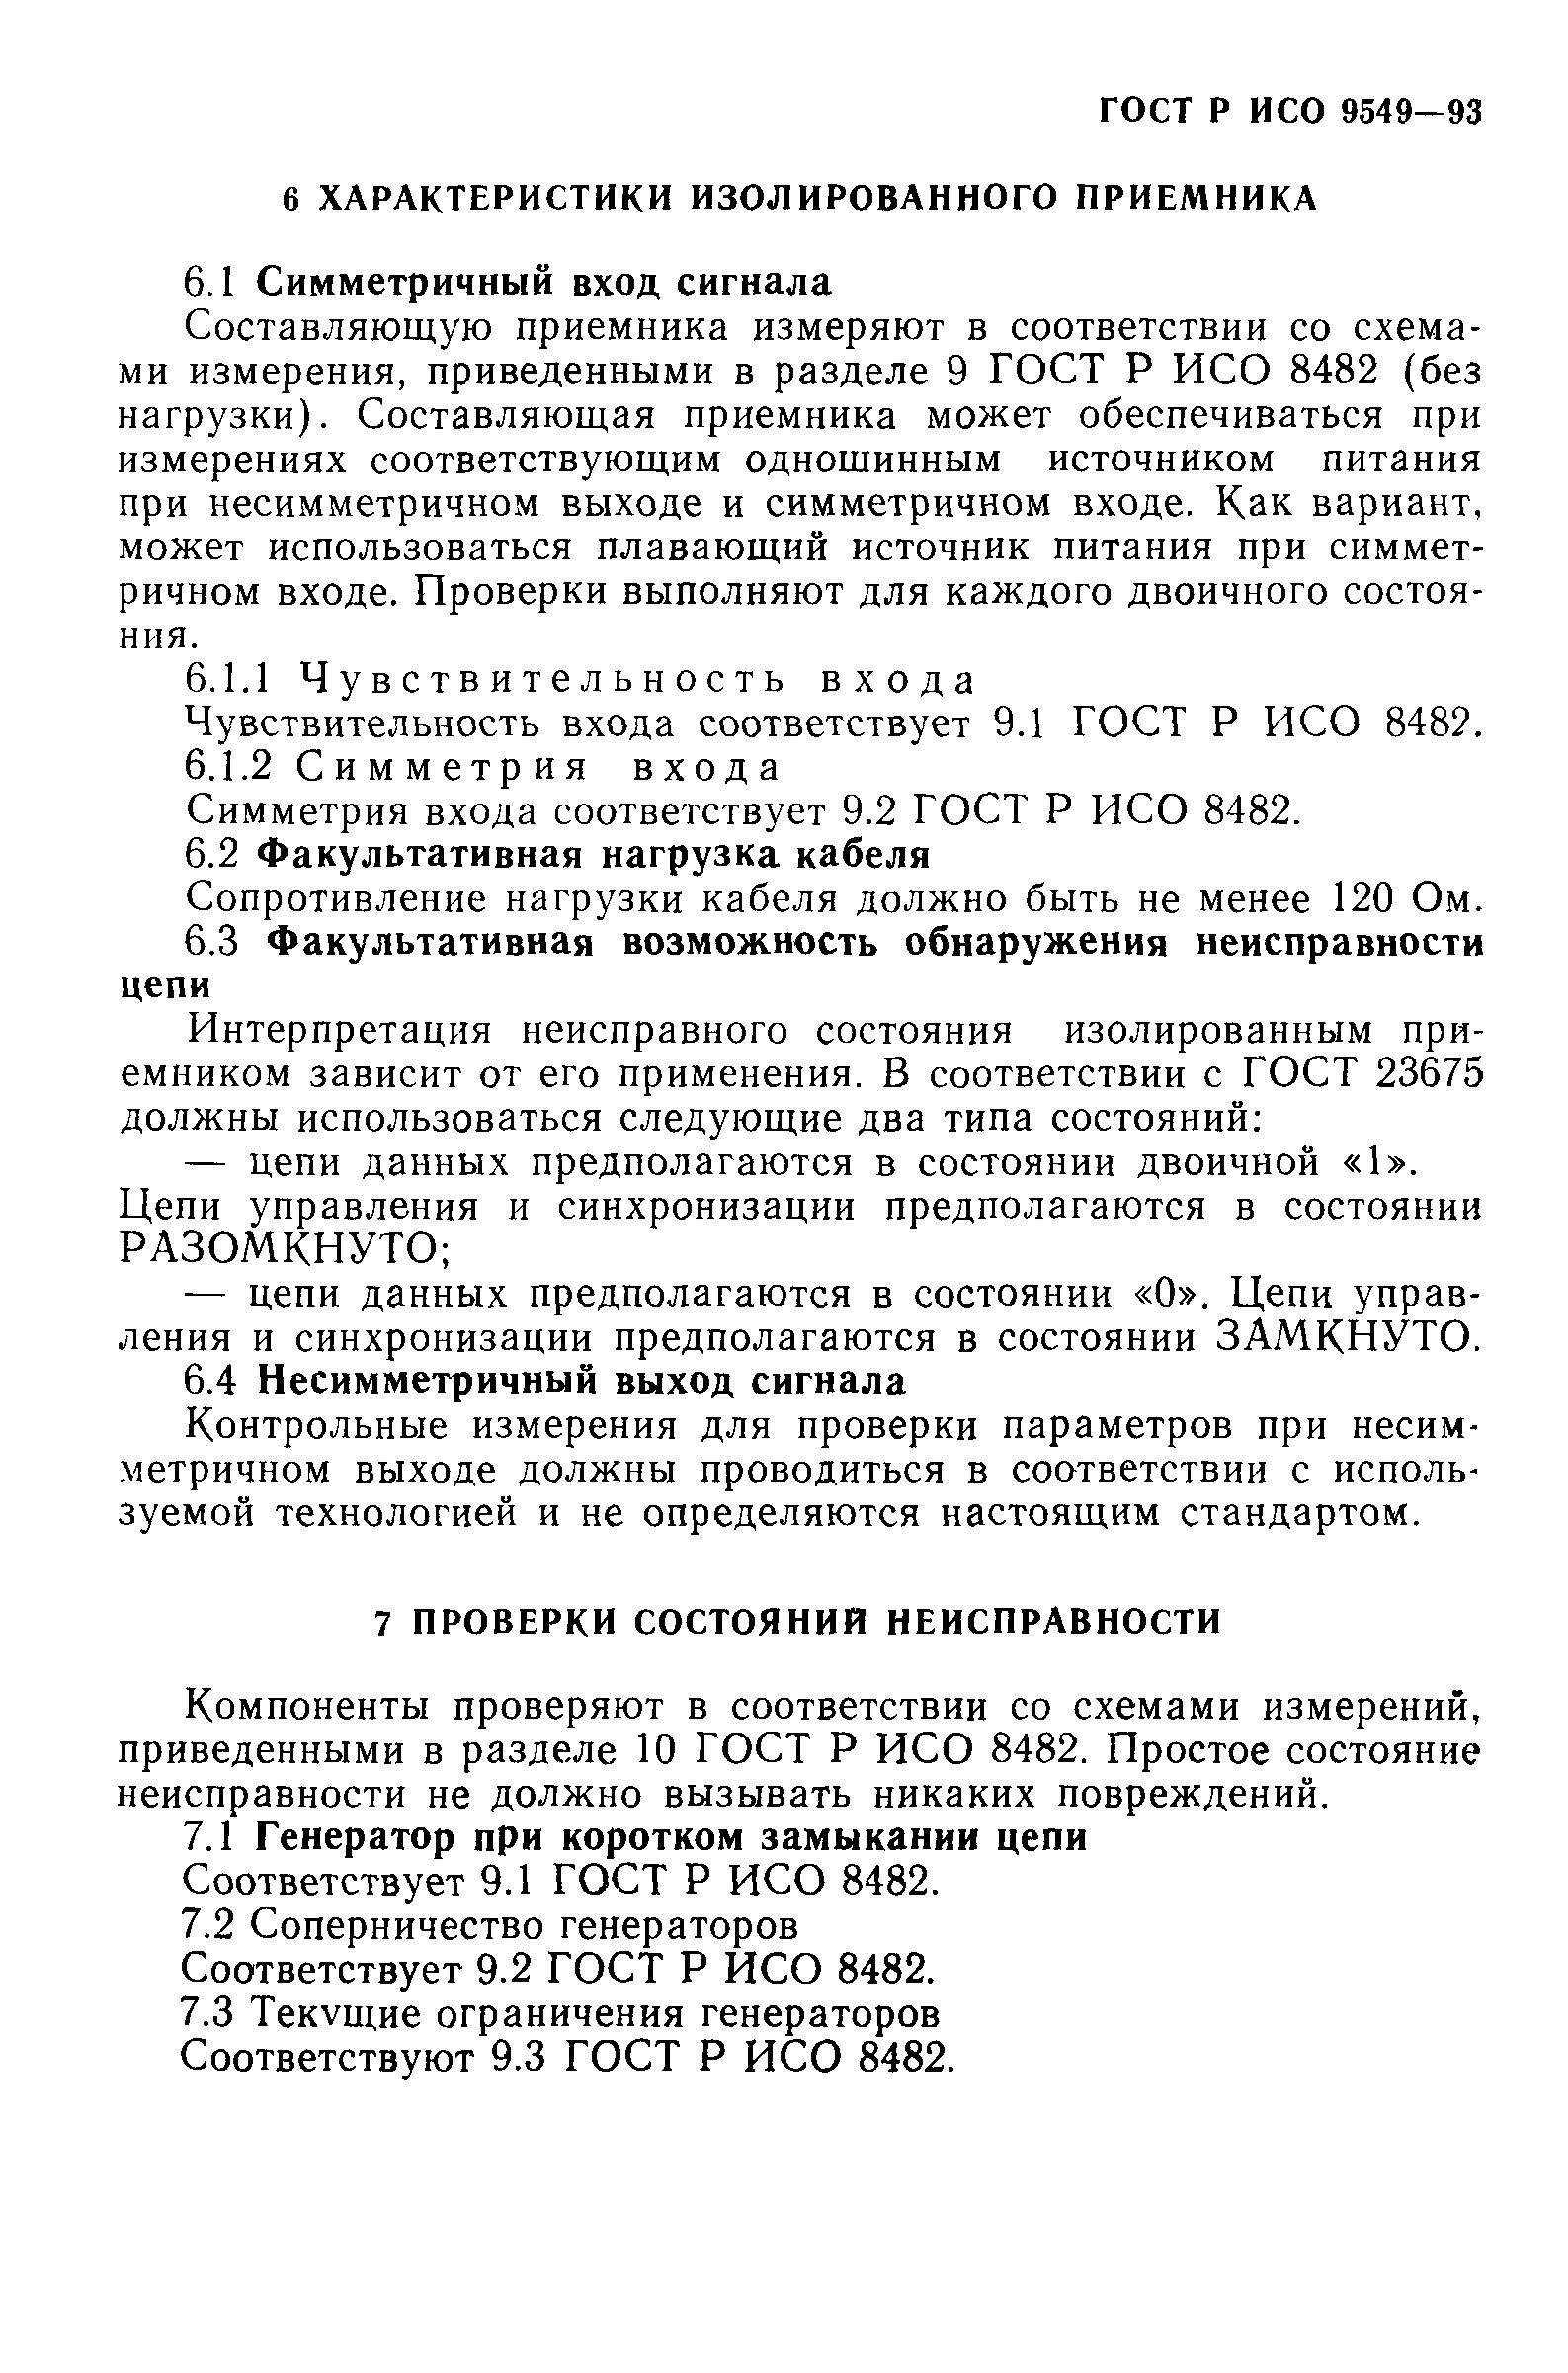 ГОСТ Р ИСО/МЭК 9549-93